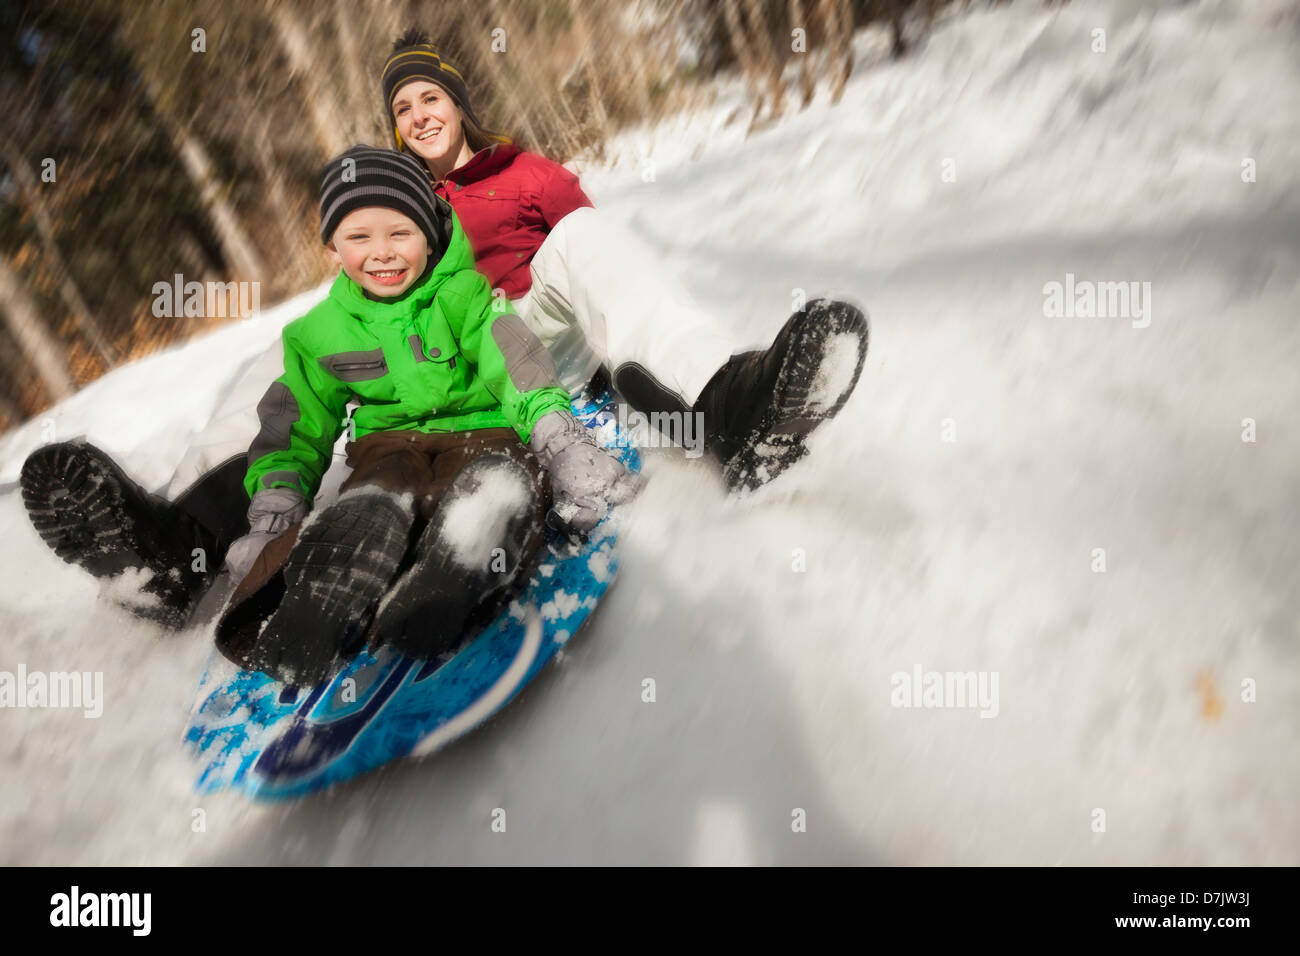 USA, Utah, Highland, Young woman sledding with boy (4-5) Stock Photo